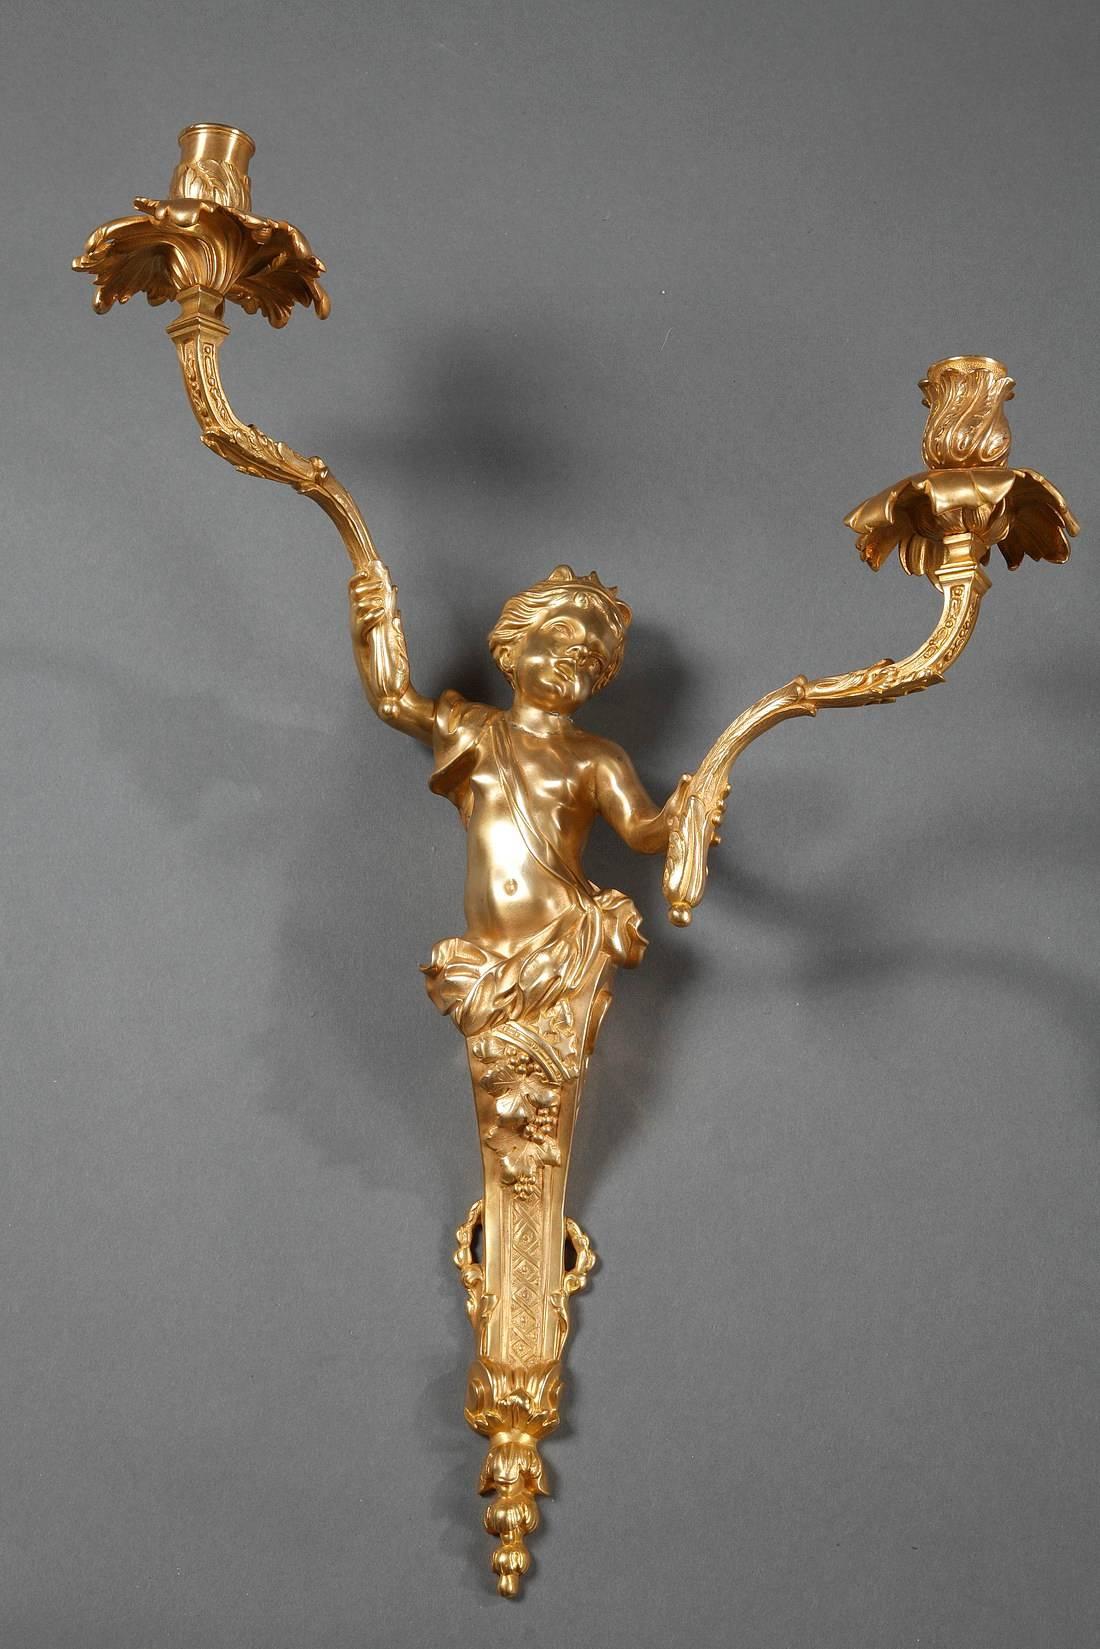 Paar Ormolu-Wandleuchter Napoleon III. im Stil Louis XV. Jeder Leuchter ist mit einem Kind in wallenden Gewändern geschmückt, das die Arme des Leuchters in den Händen hält. Die Düsen sind mit lebhaftem Laub verziert,

 
um 1860
Abmessungen: B 15